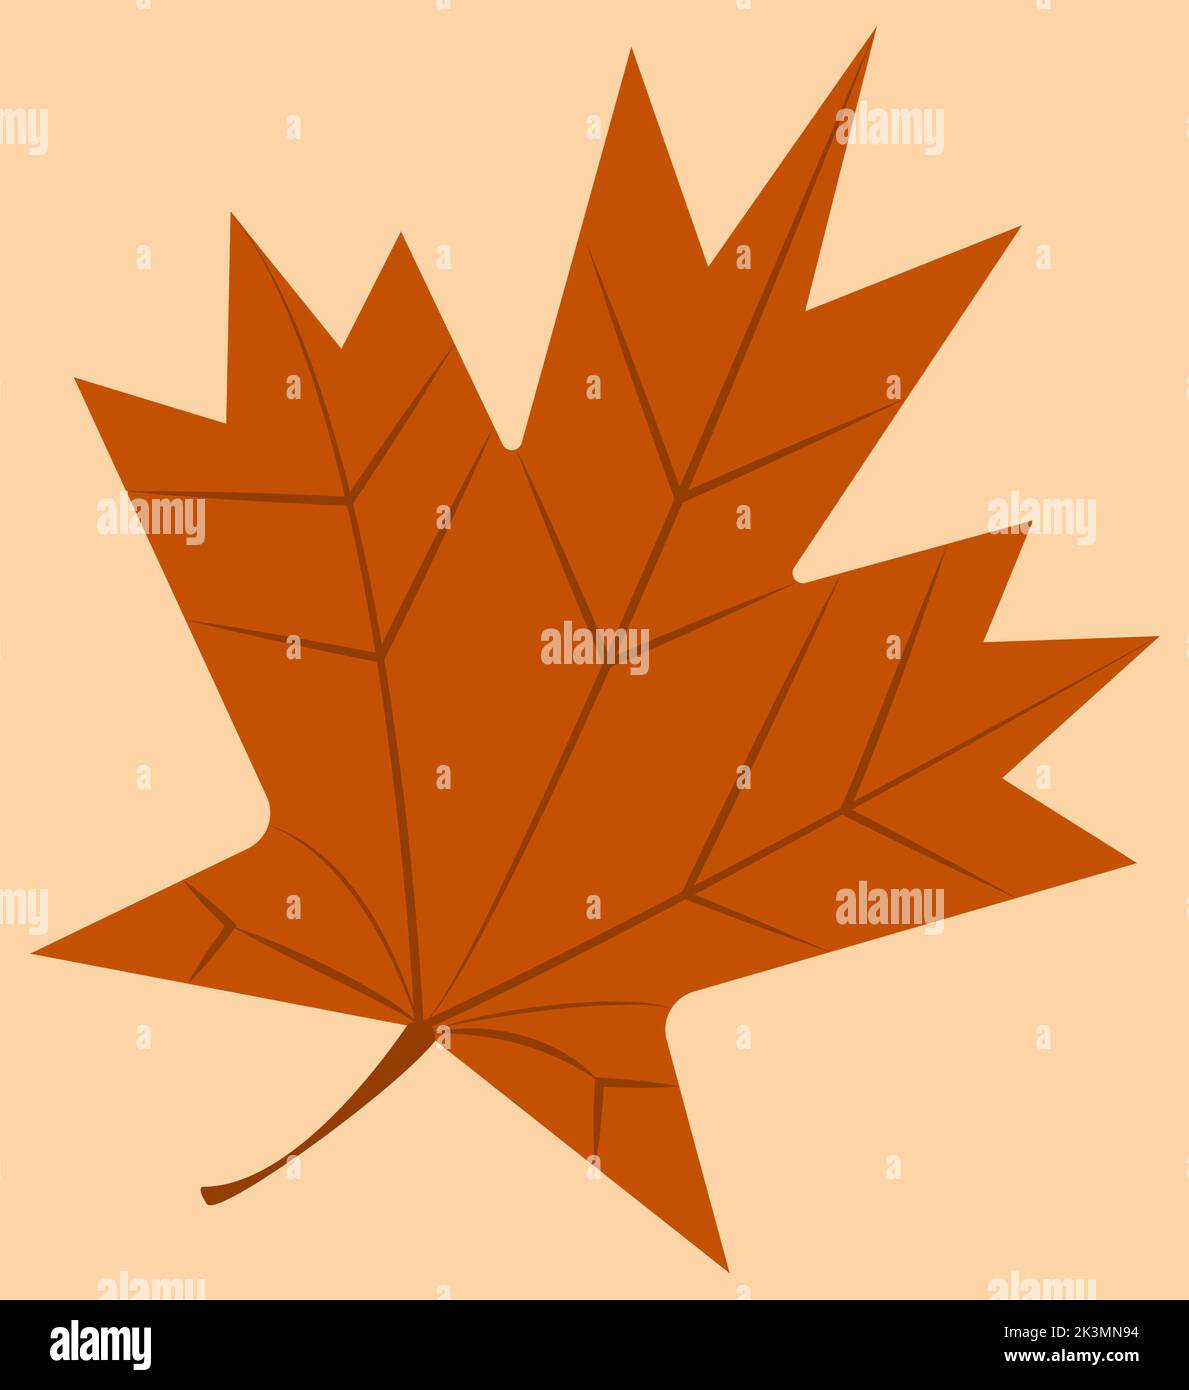 Feuille d'automne, feuille d'orange, feuille tombée de couleur orange, convient aux publicités et affiches d'automne, illustration de feuille d'automne, signe et étiquette du Canada Banque D'Images